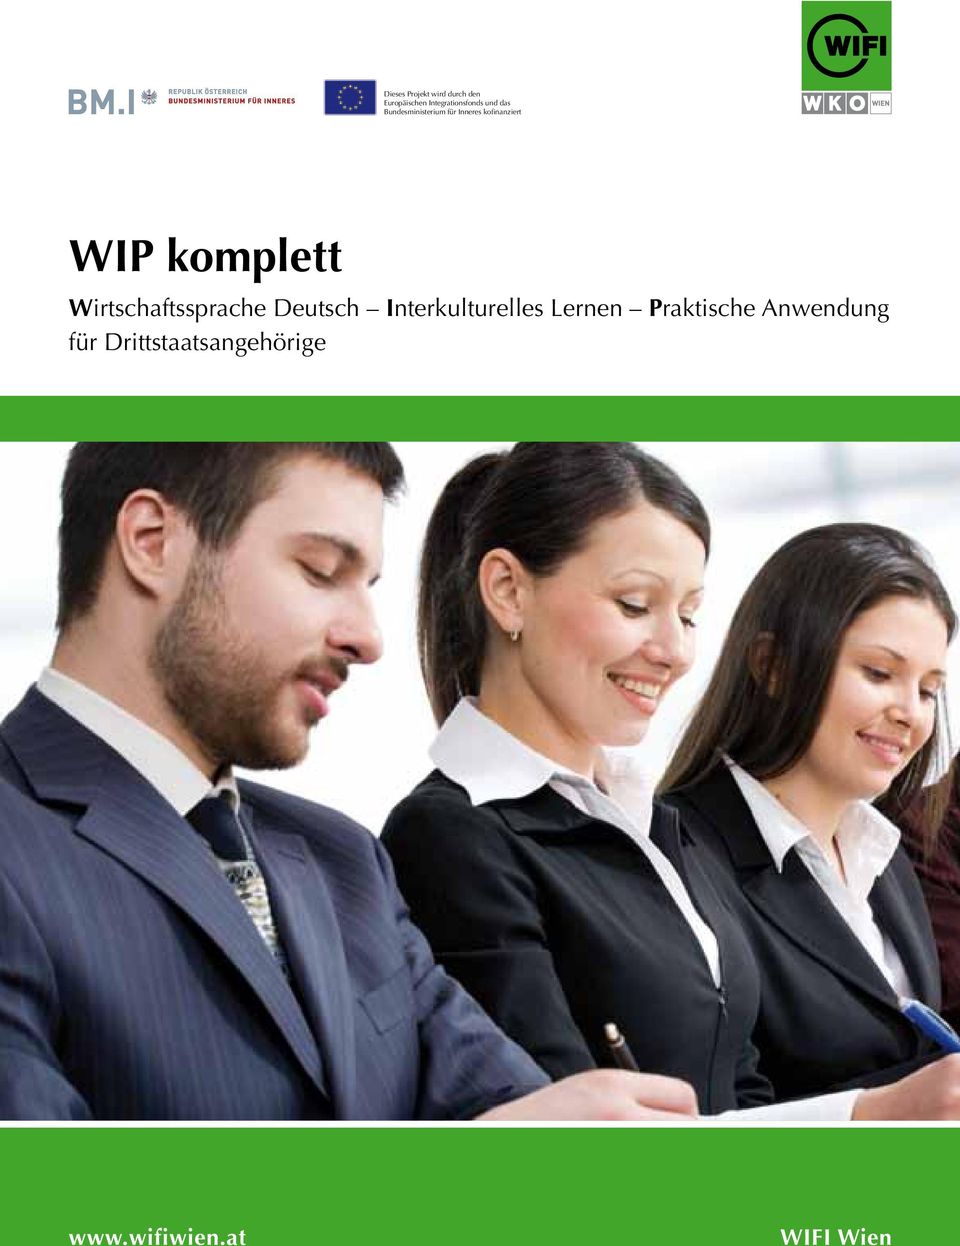 kofinanziert WIP komplett Wirtschaftssprache Deutsch